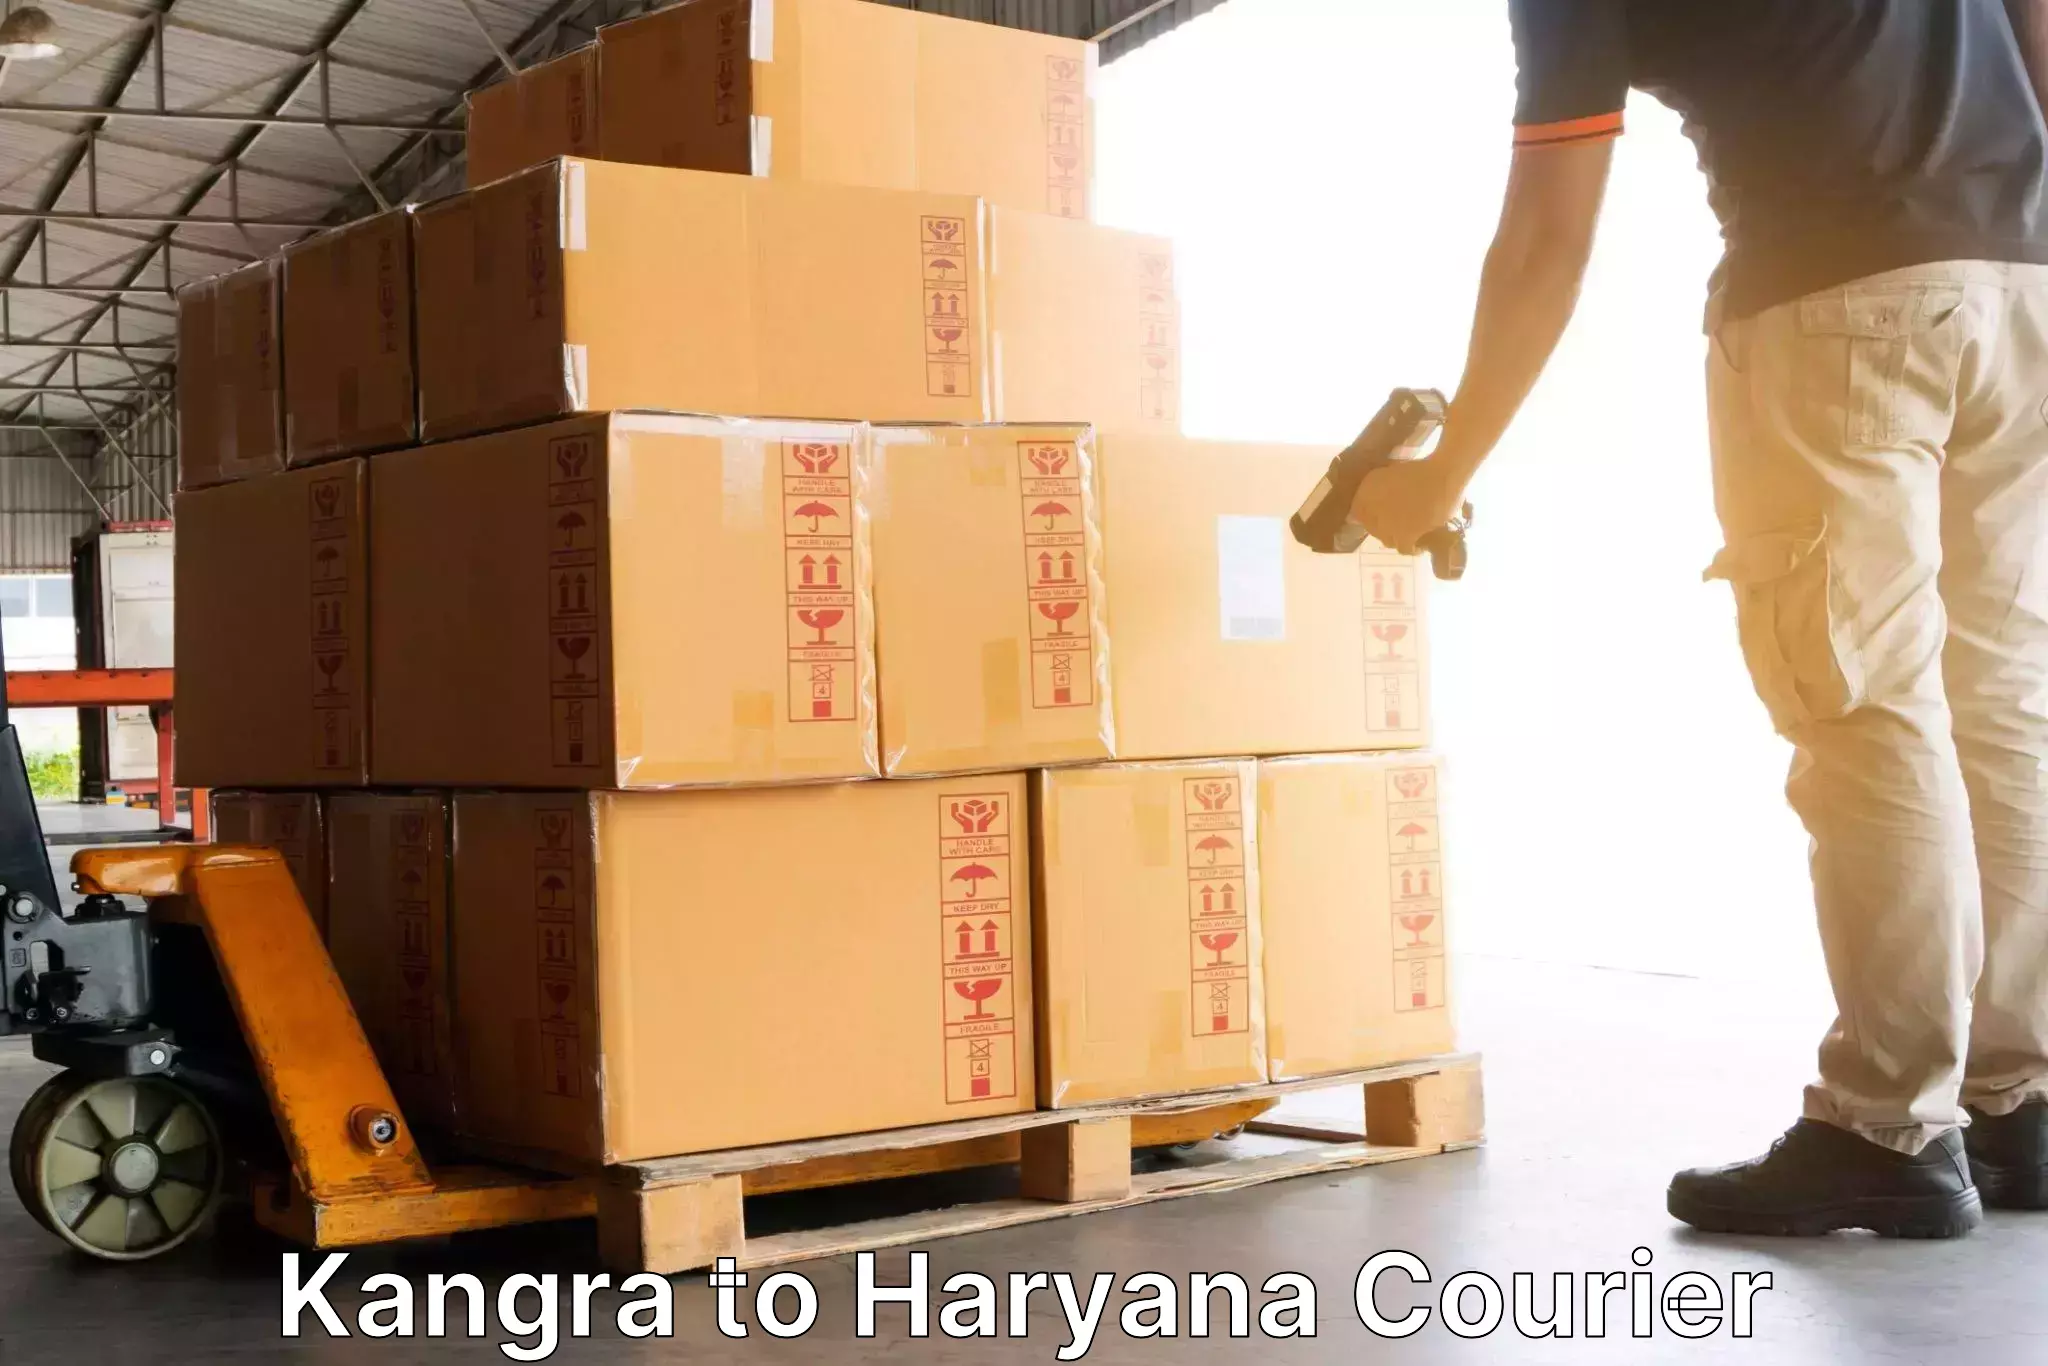 Rapid shipping services Kangra to Chaudhary Charan Singh Haryana Agricultural University Hisar